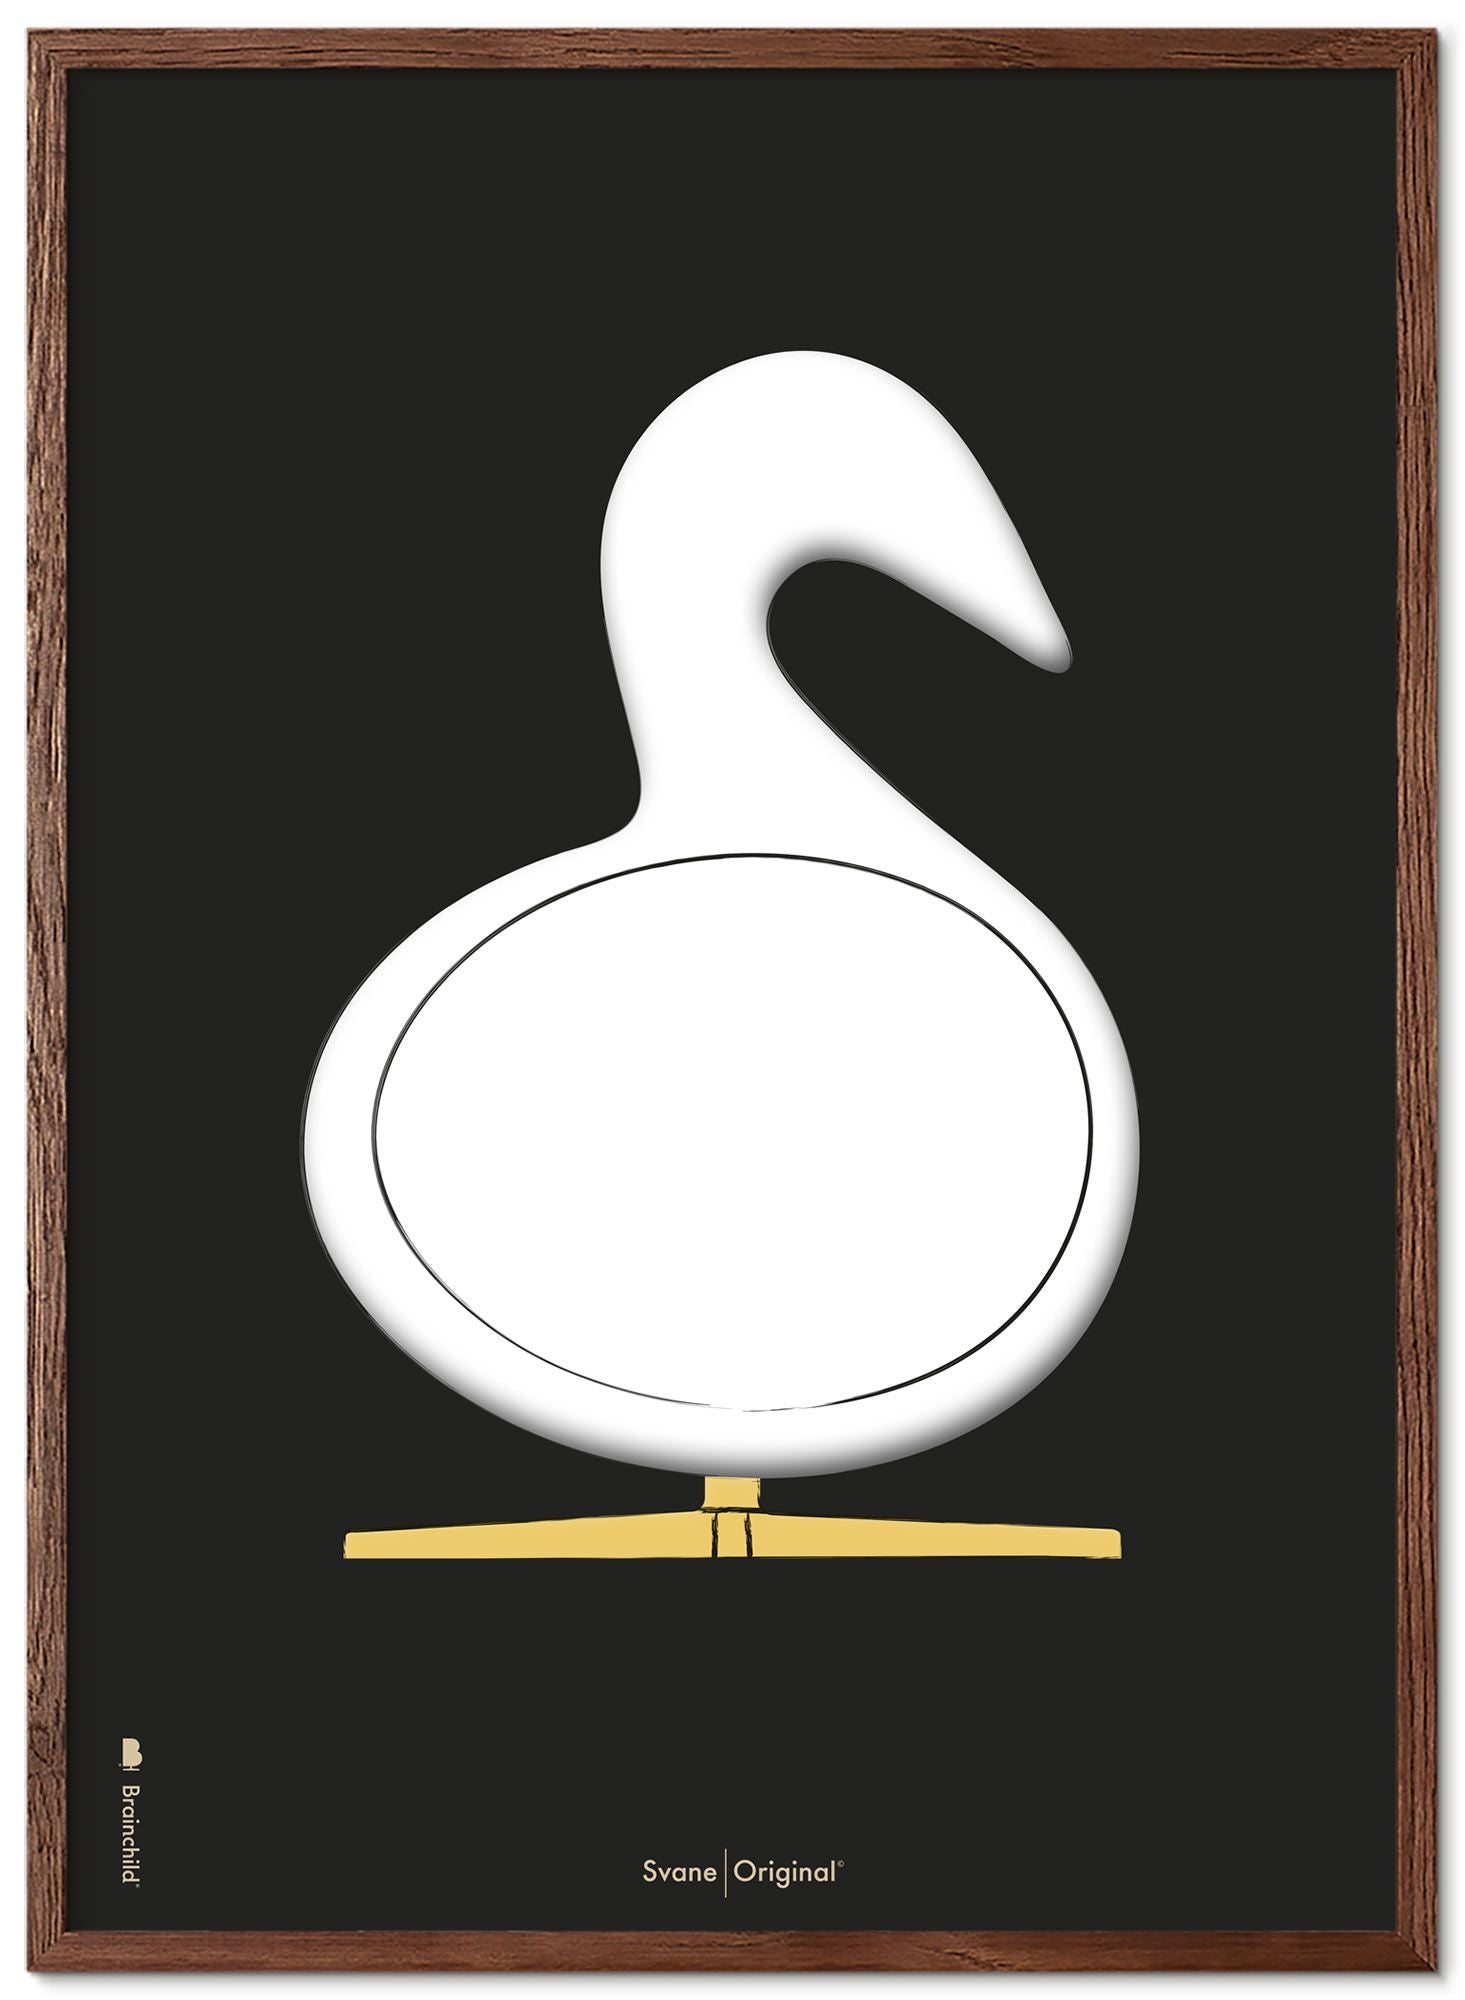 Schema poster di disegno di disegno del cigno da gioco in legno scuro 70x100 cm, sfondo nero